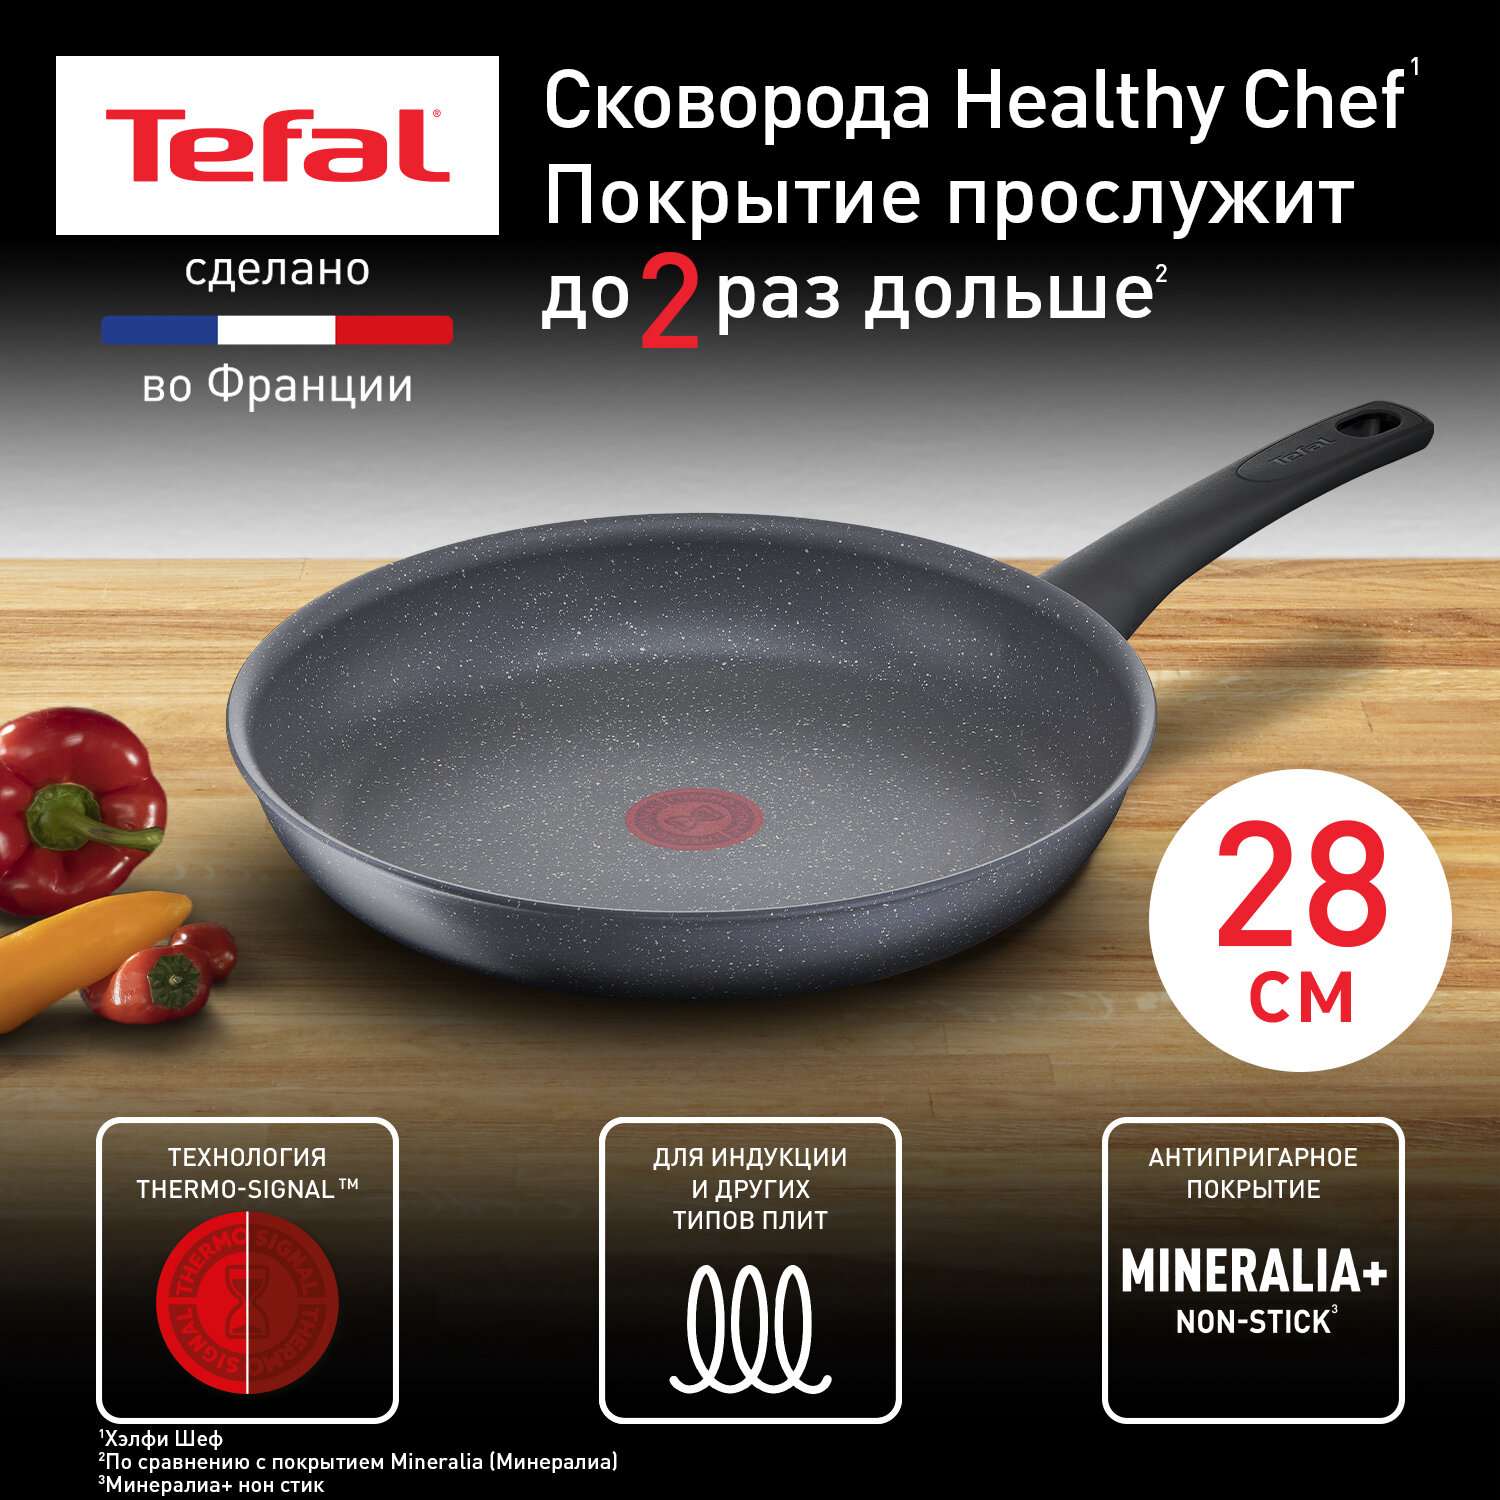 Сковорода Tefal Healthy Chef G1500672, 28 см, с индикатором температуры, с антипригарным покрытием, подходит для индукции, сделано во Франции